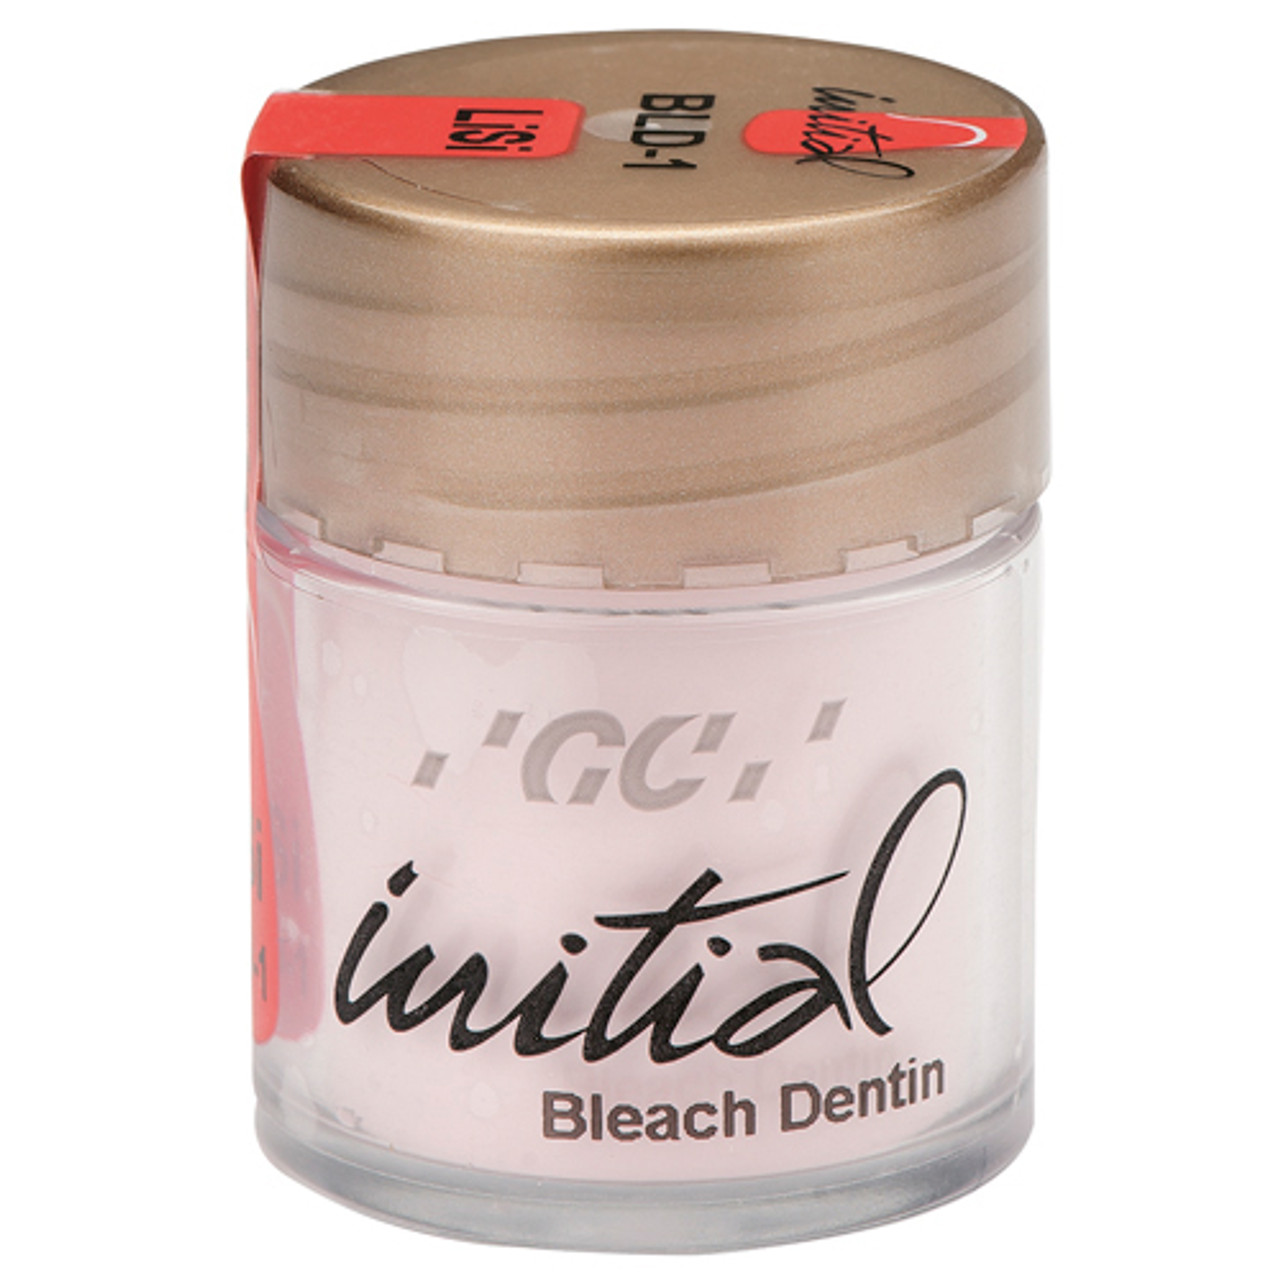 GC America - Initial LiSi Bleach Dentin (White)